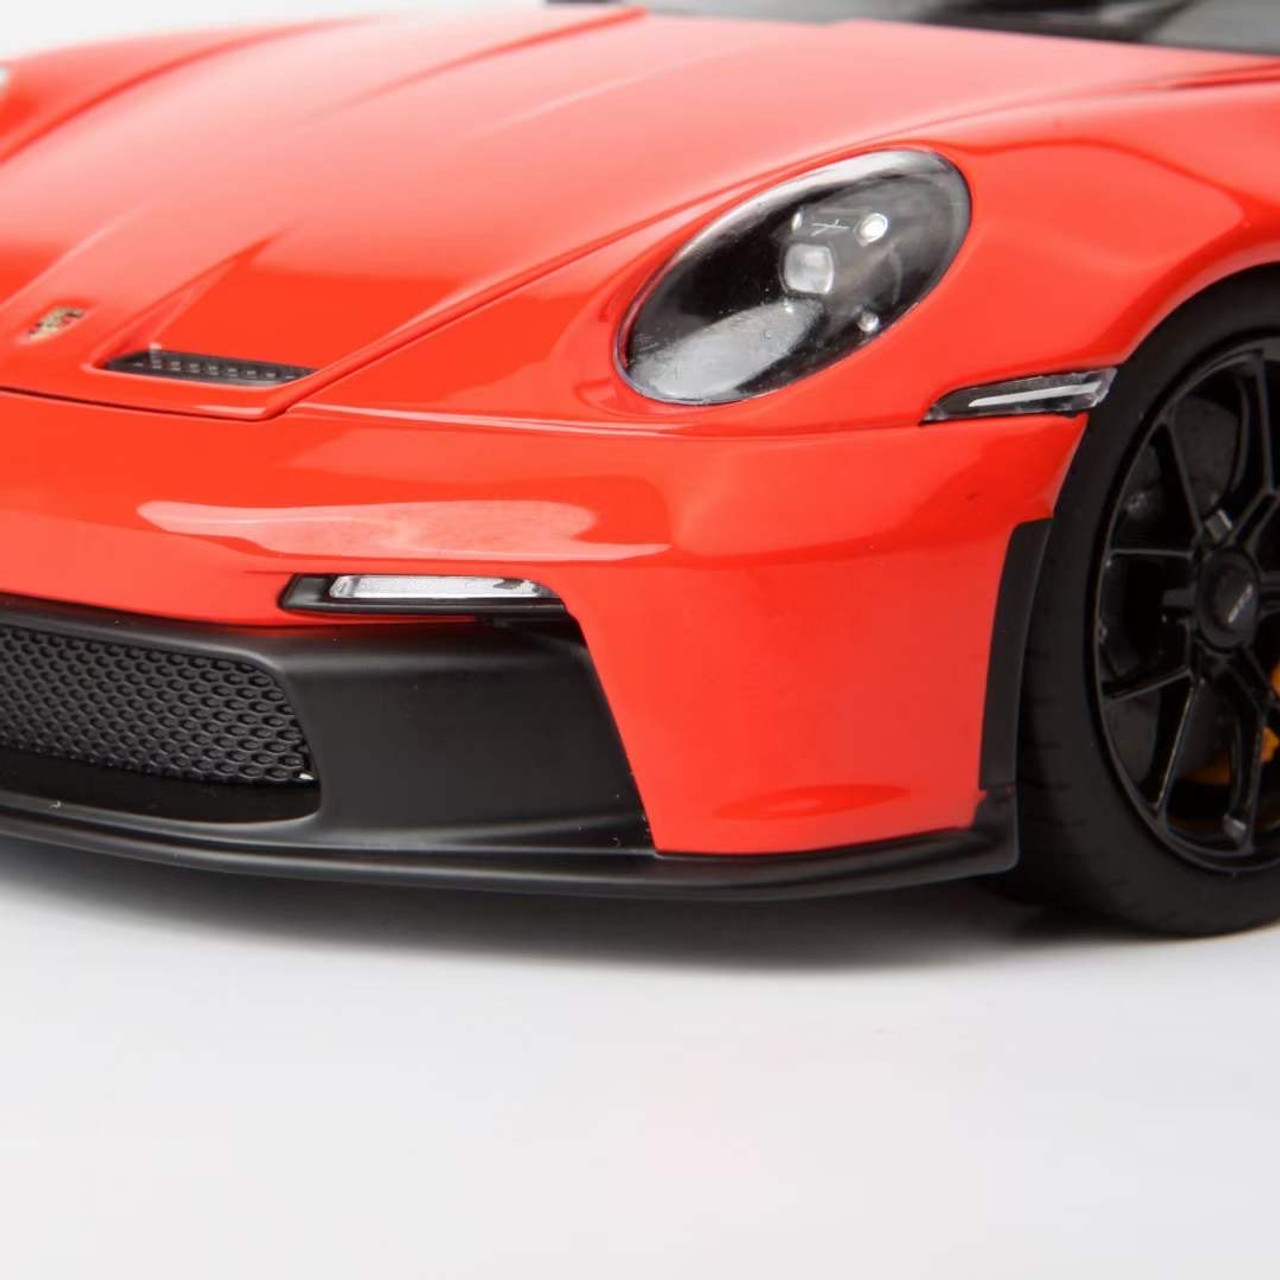 1/18 Norev 2021 Porsche 911 992 GT3 (Orange) Diecast Car Model